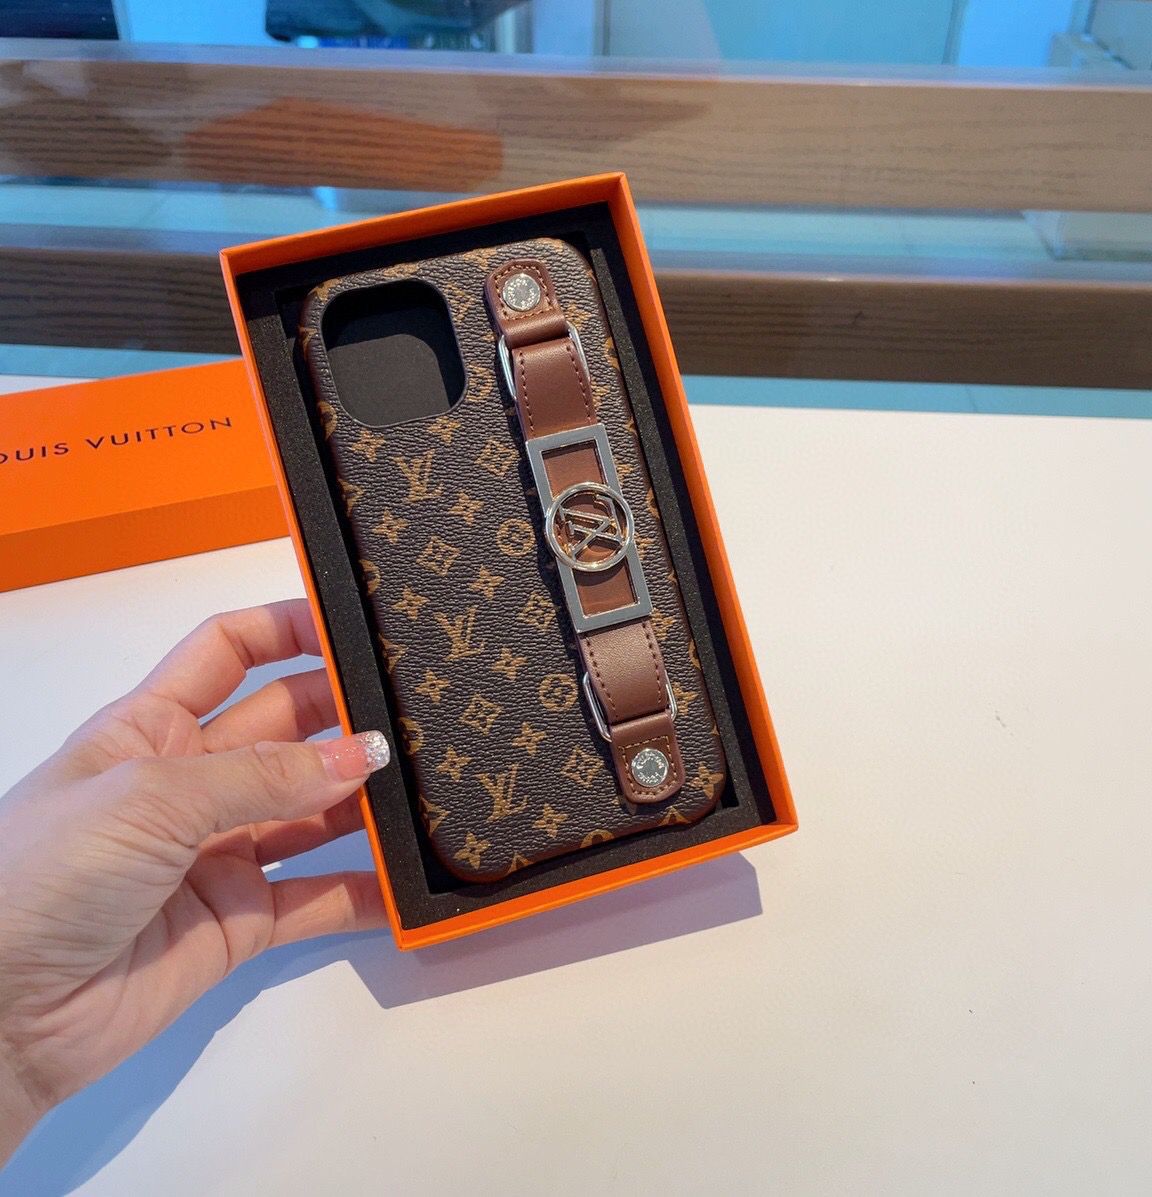 Capinha Louis Vuitton Laranja para iPhone - Mais Cases: Capinhas